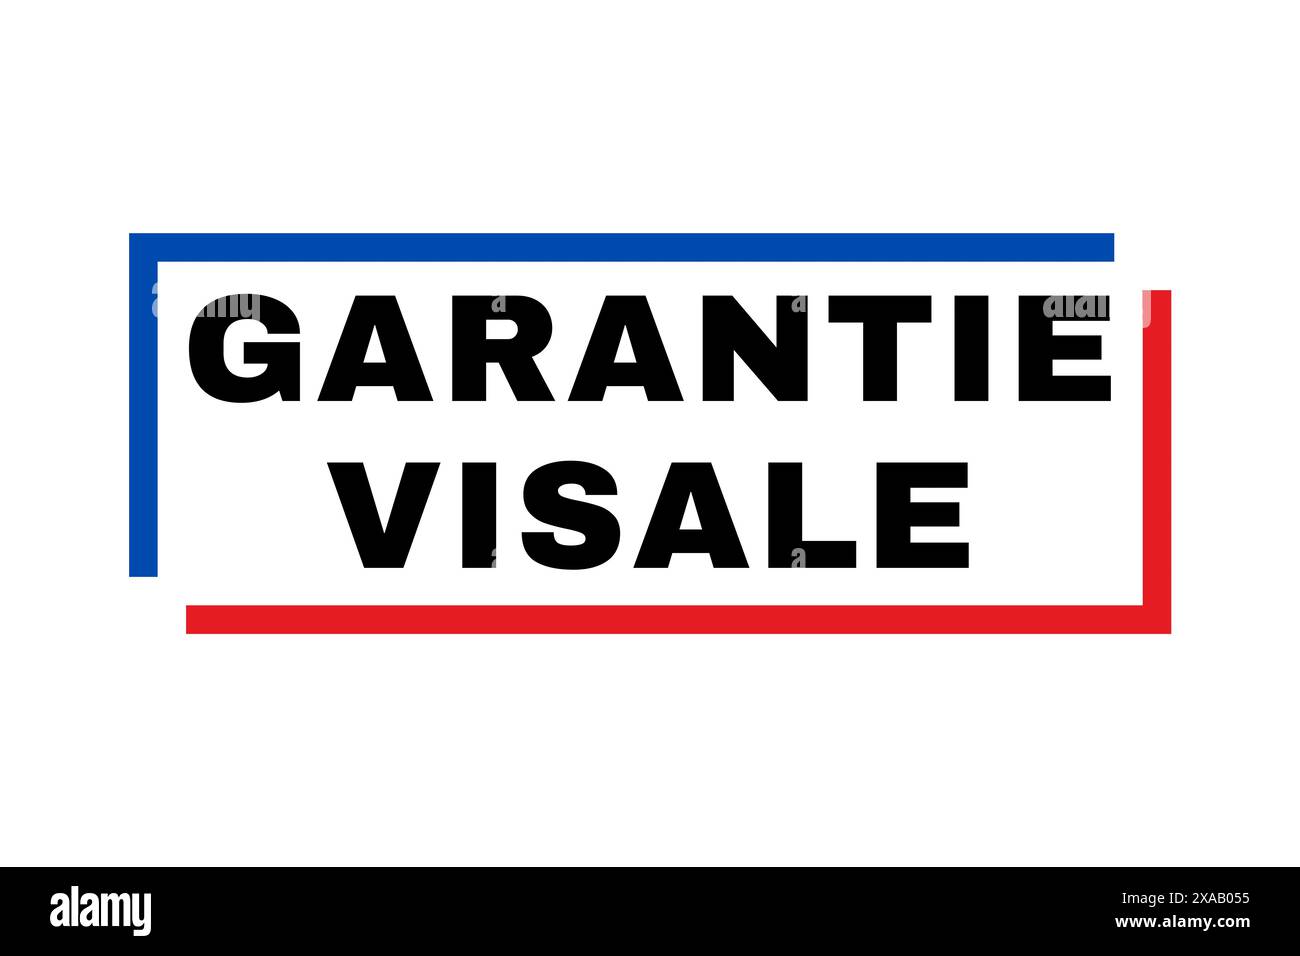 Garantie visale symbole appelé garantie visale en français Banque D'Images